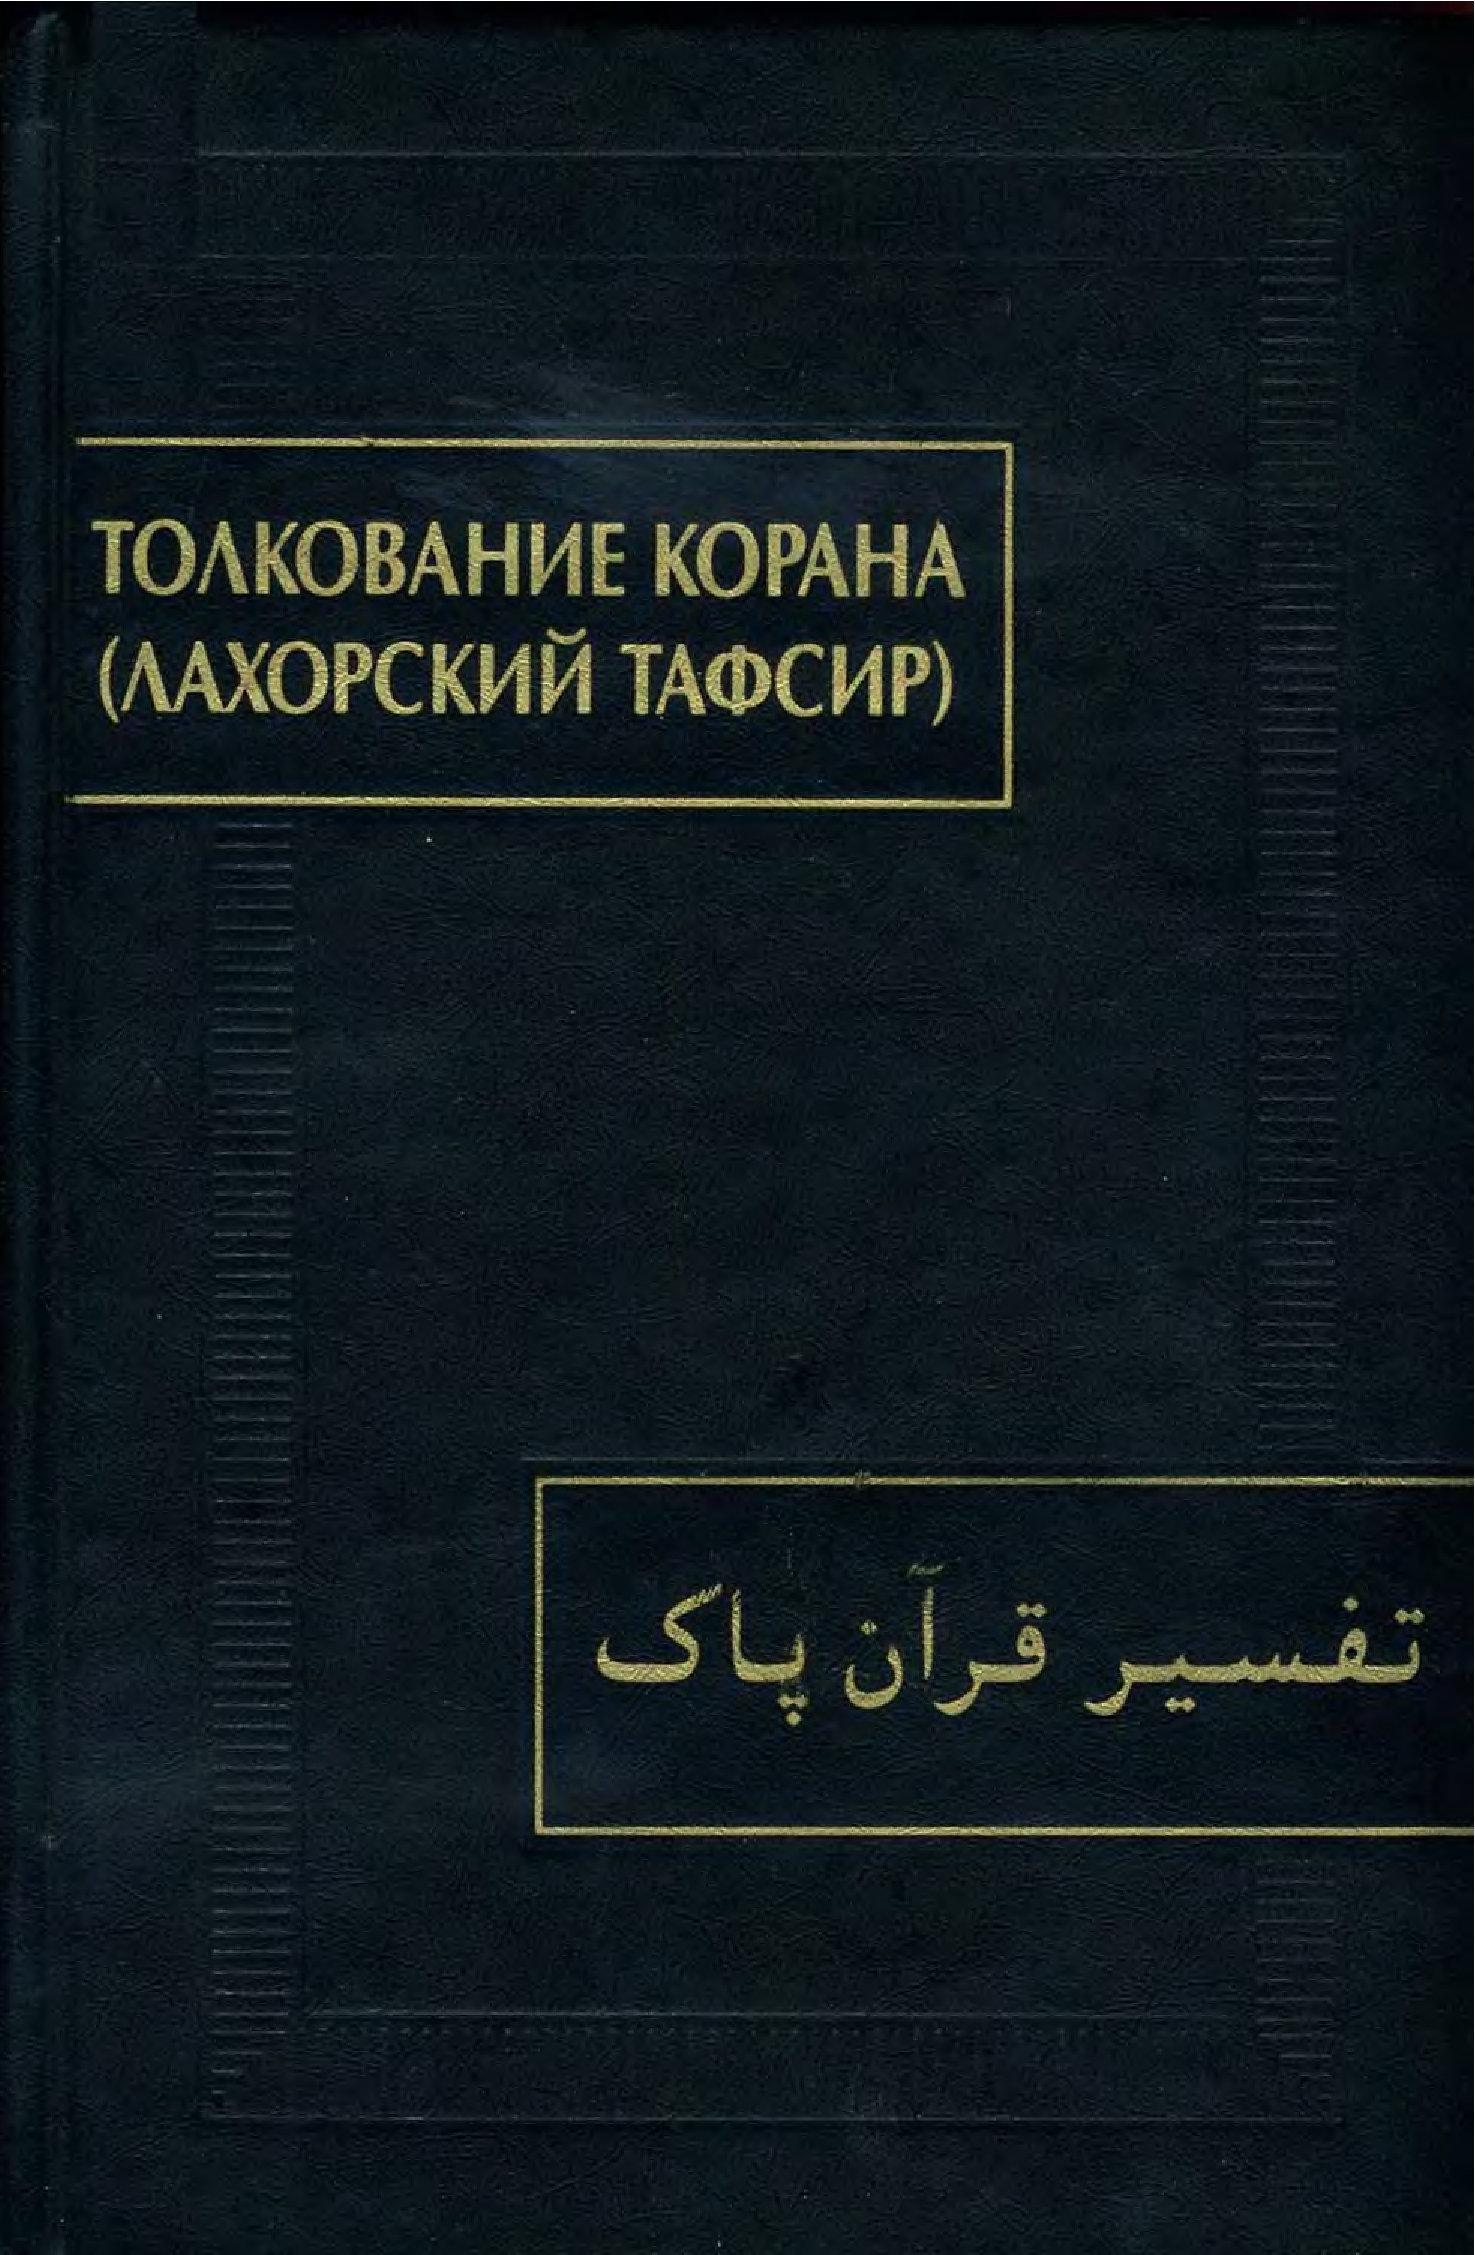 Книги тафсира